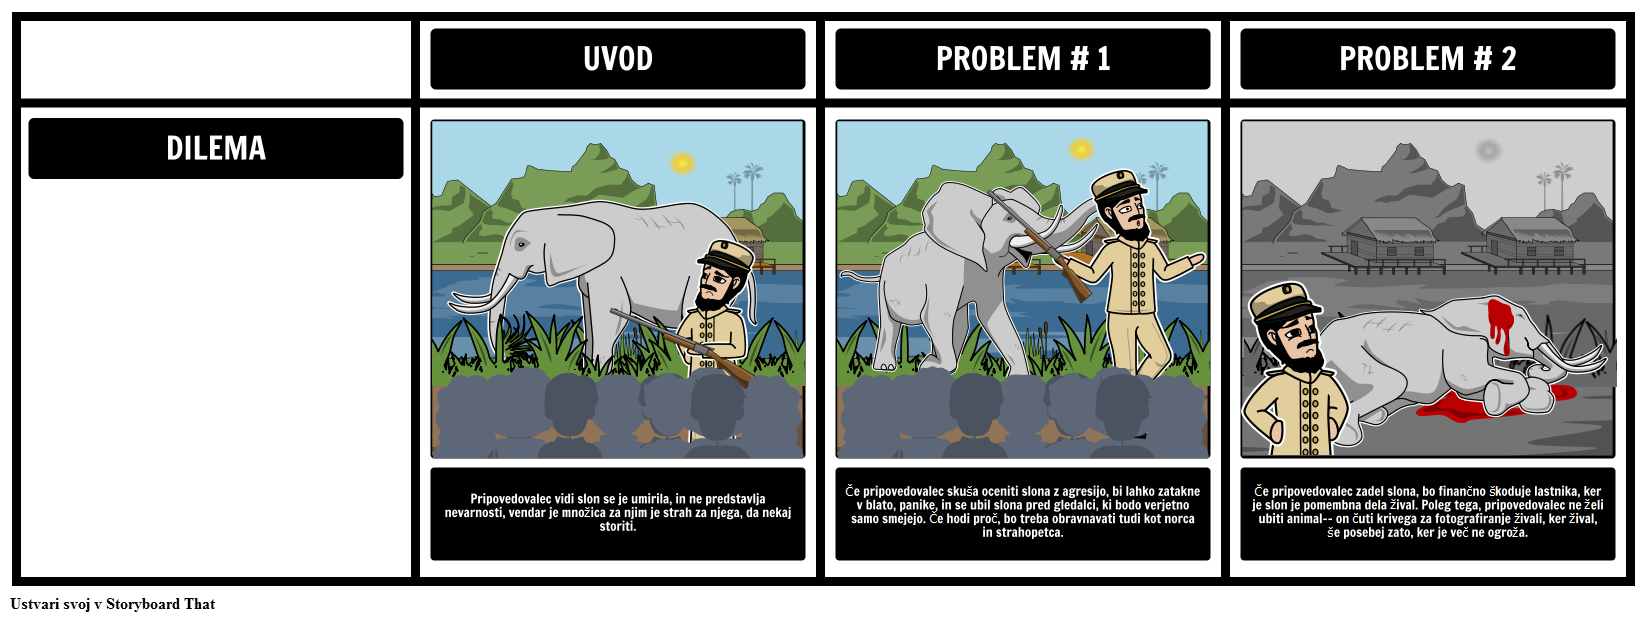 Analiziranje pripovedovalec dilema v "Shooting slona"